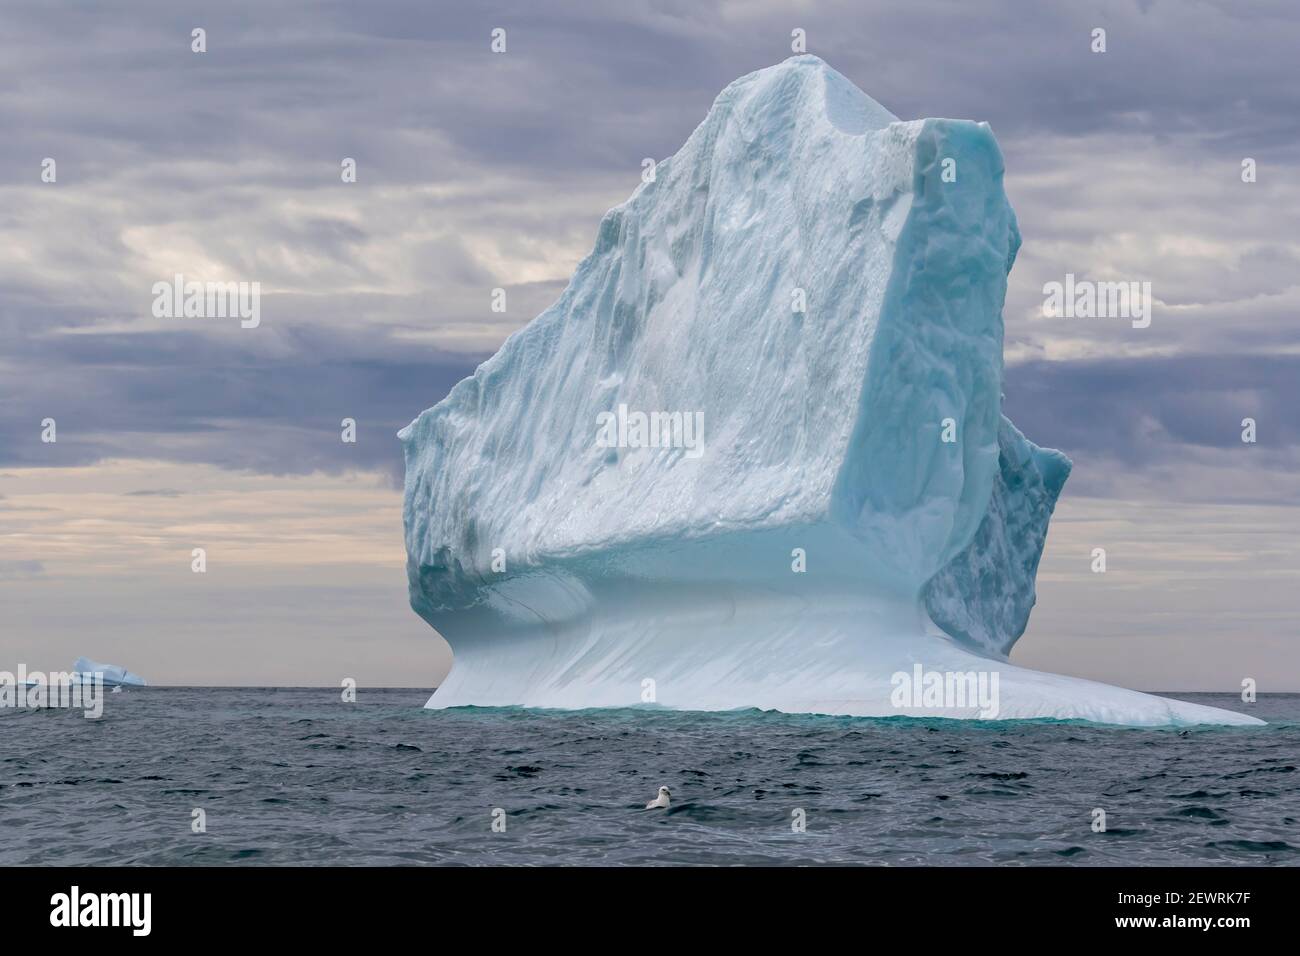 Enormi iceberg a Capo Brewster, il punto più orientale della frastagliata e montagnosa Penisola Savoia, Groenlandia, regioni polari Foto Stock